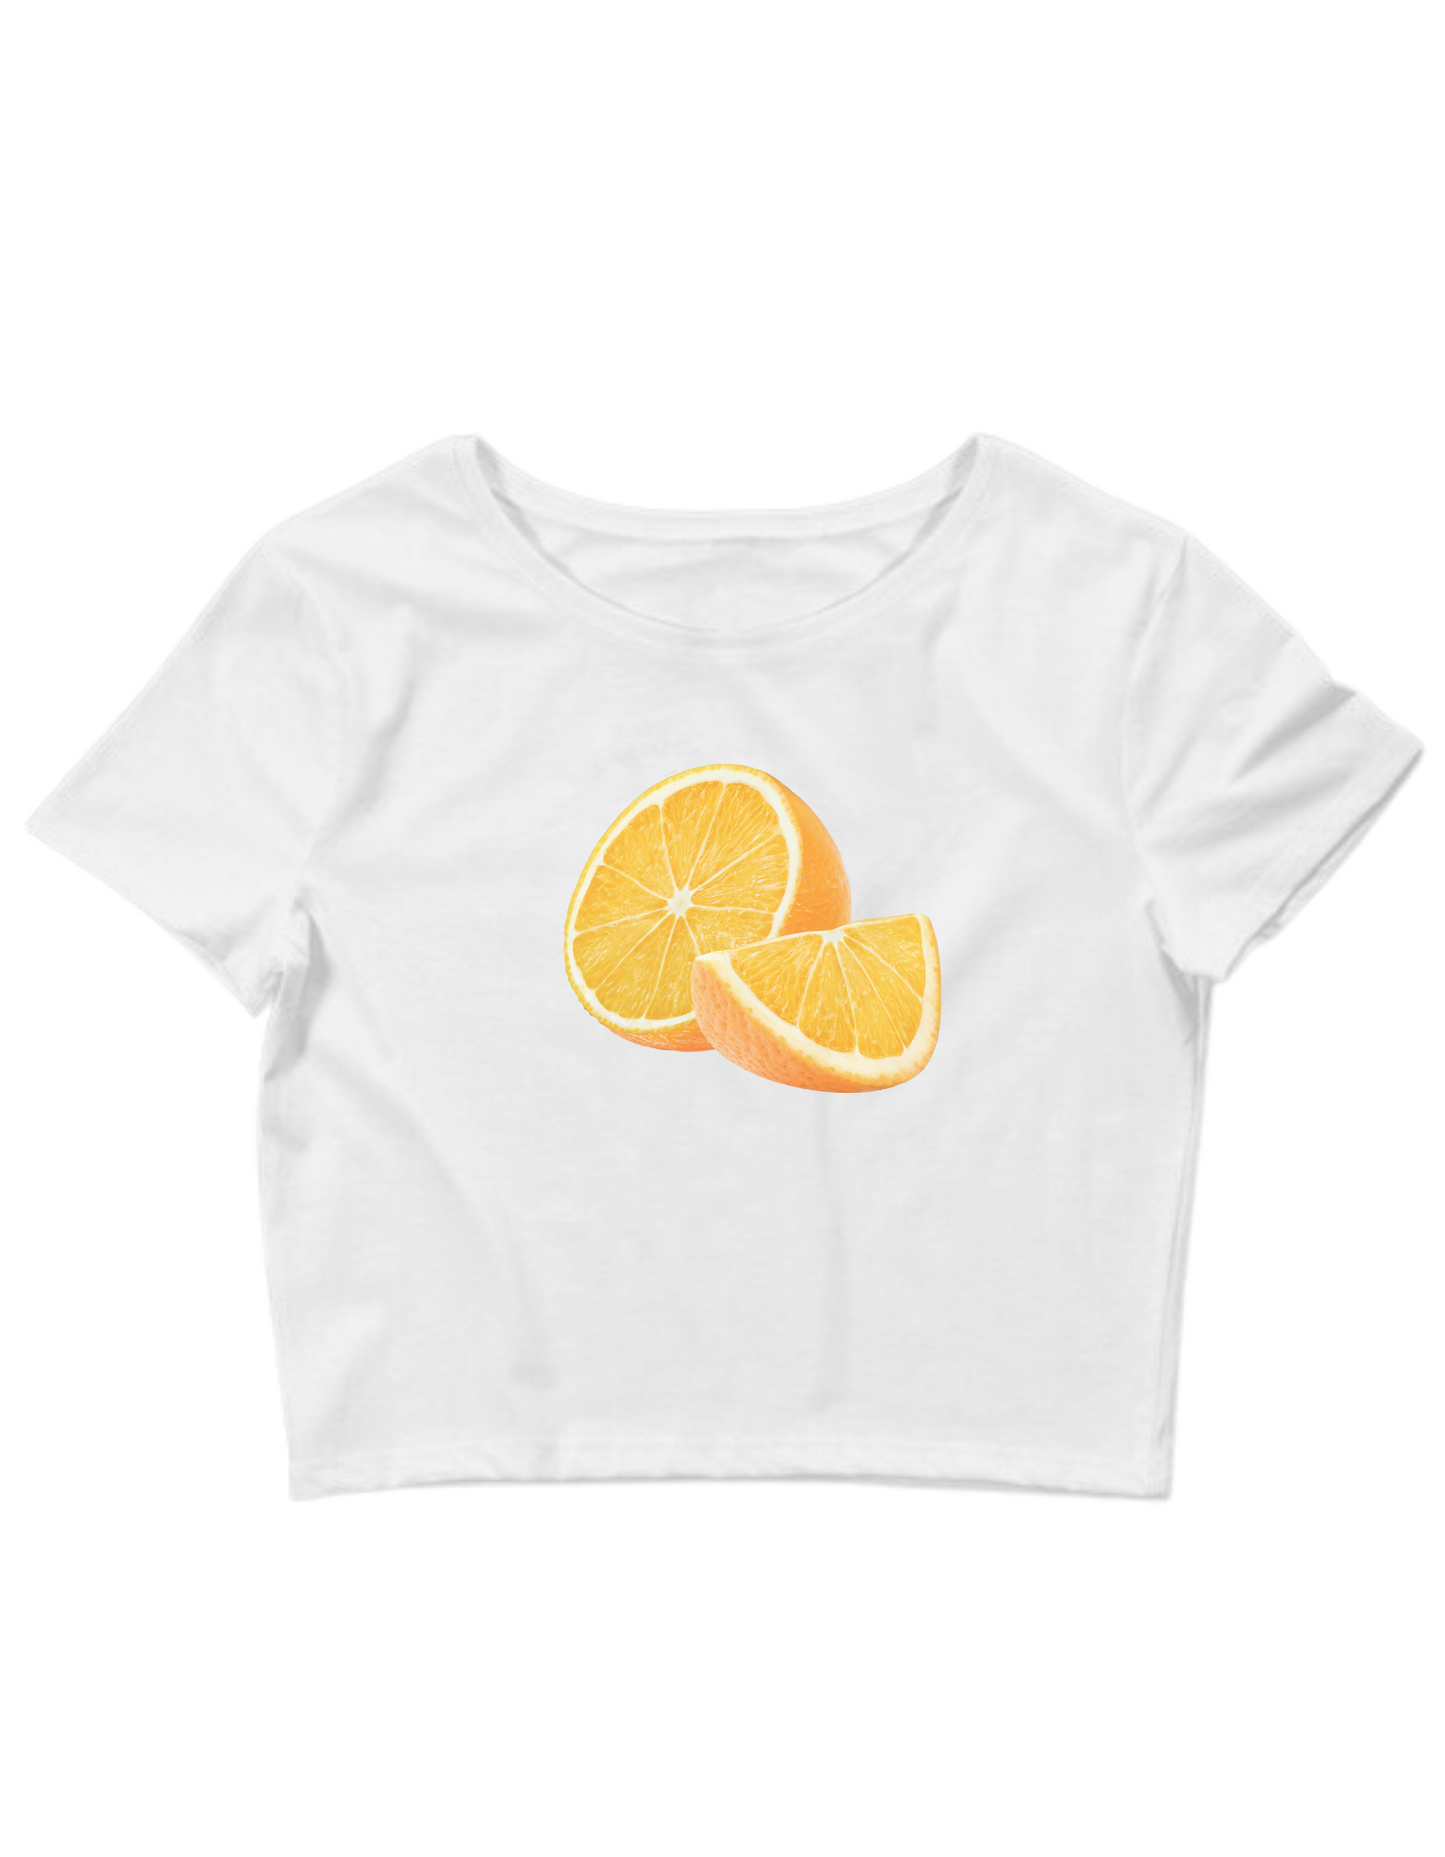 Printed 'Orange Slice' Cropped, Short Sleeve, Adult Female, Baby Tee